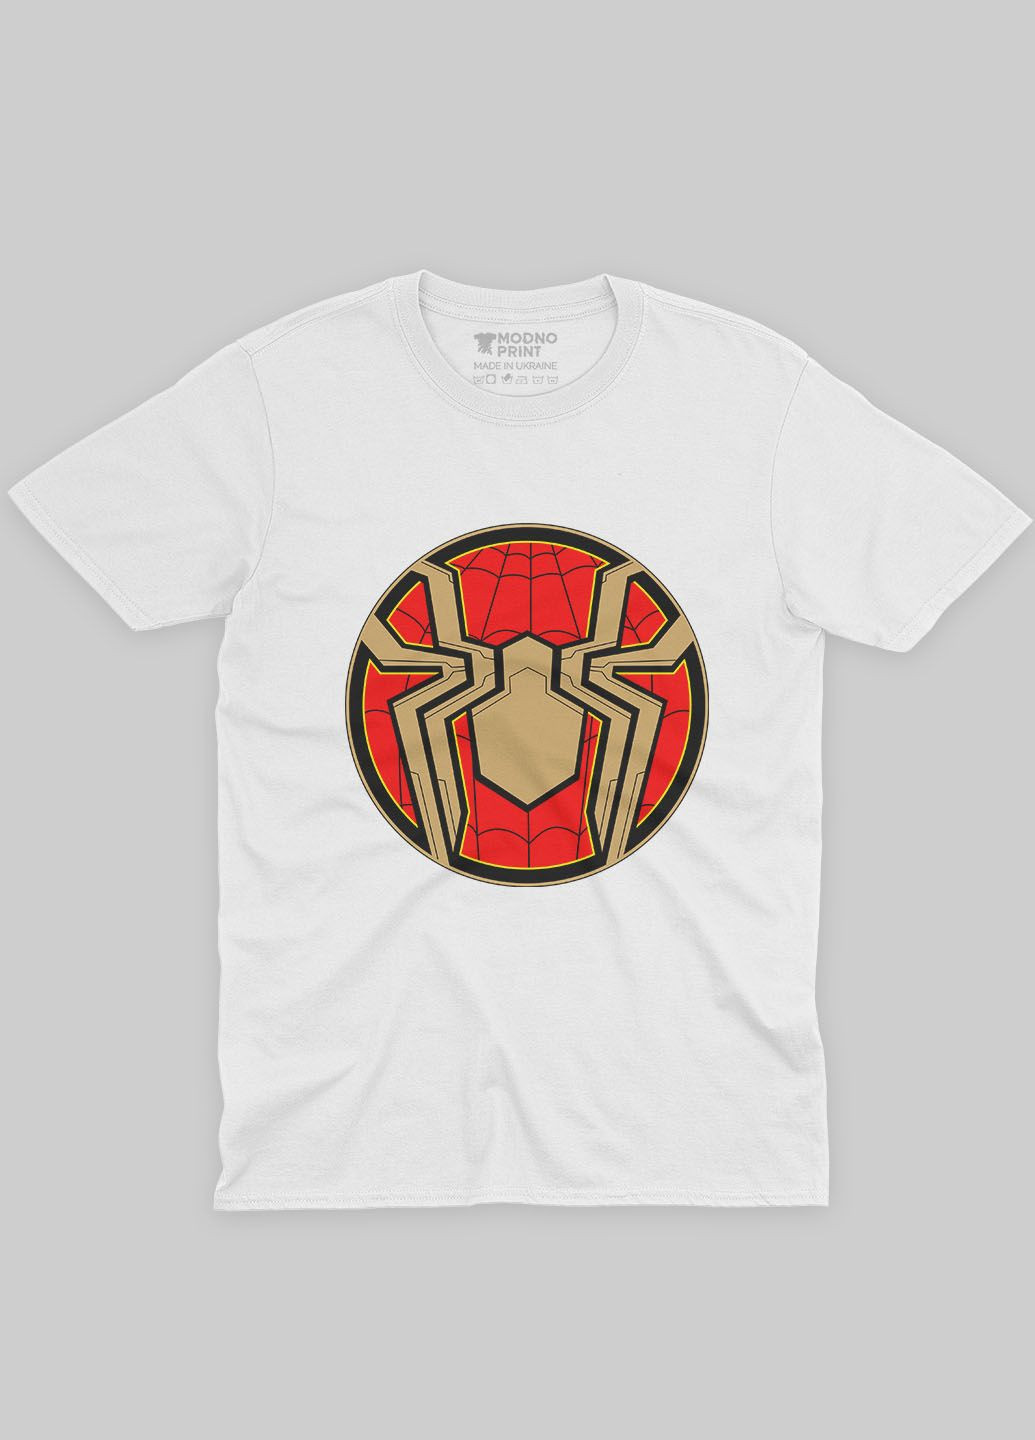 Белая демисезонная футболка для мальчика с принтом супергероя - человек-паук (ts001-1-whi-006-014-105-b) Modno